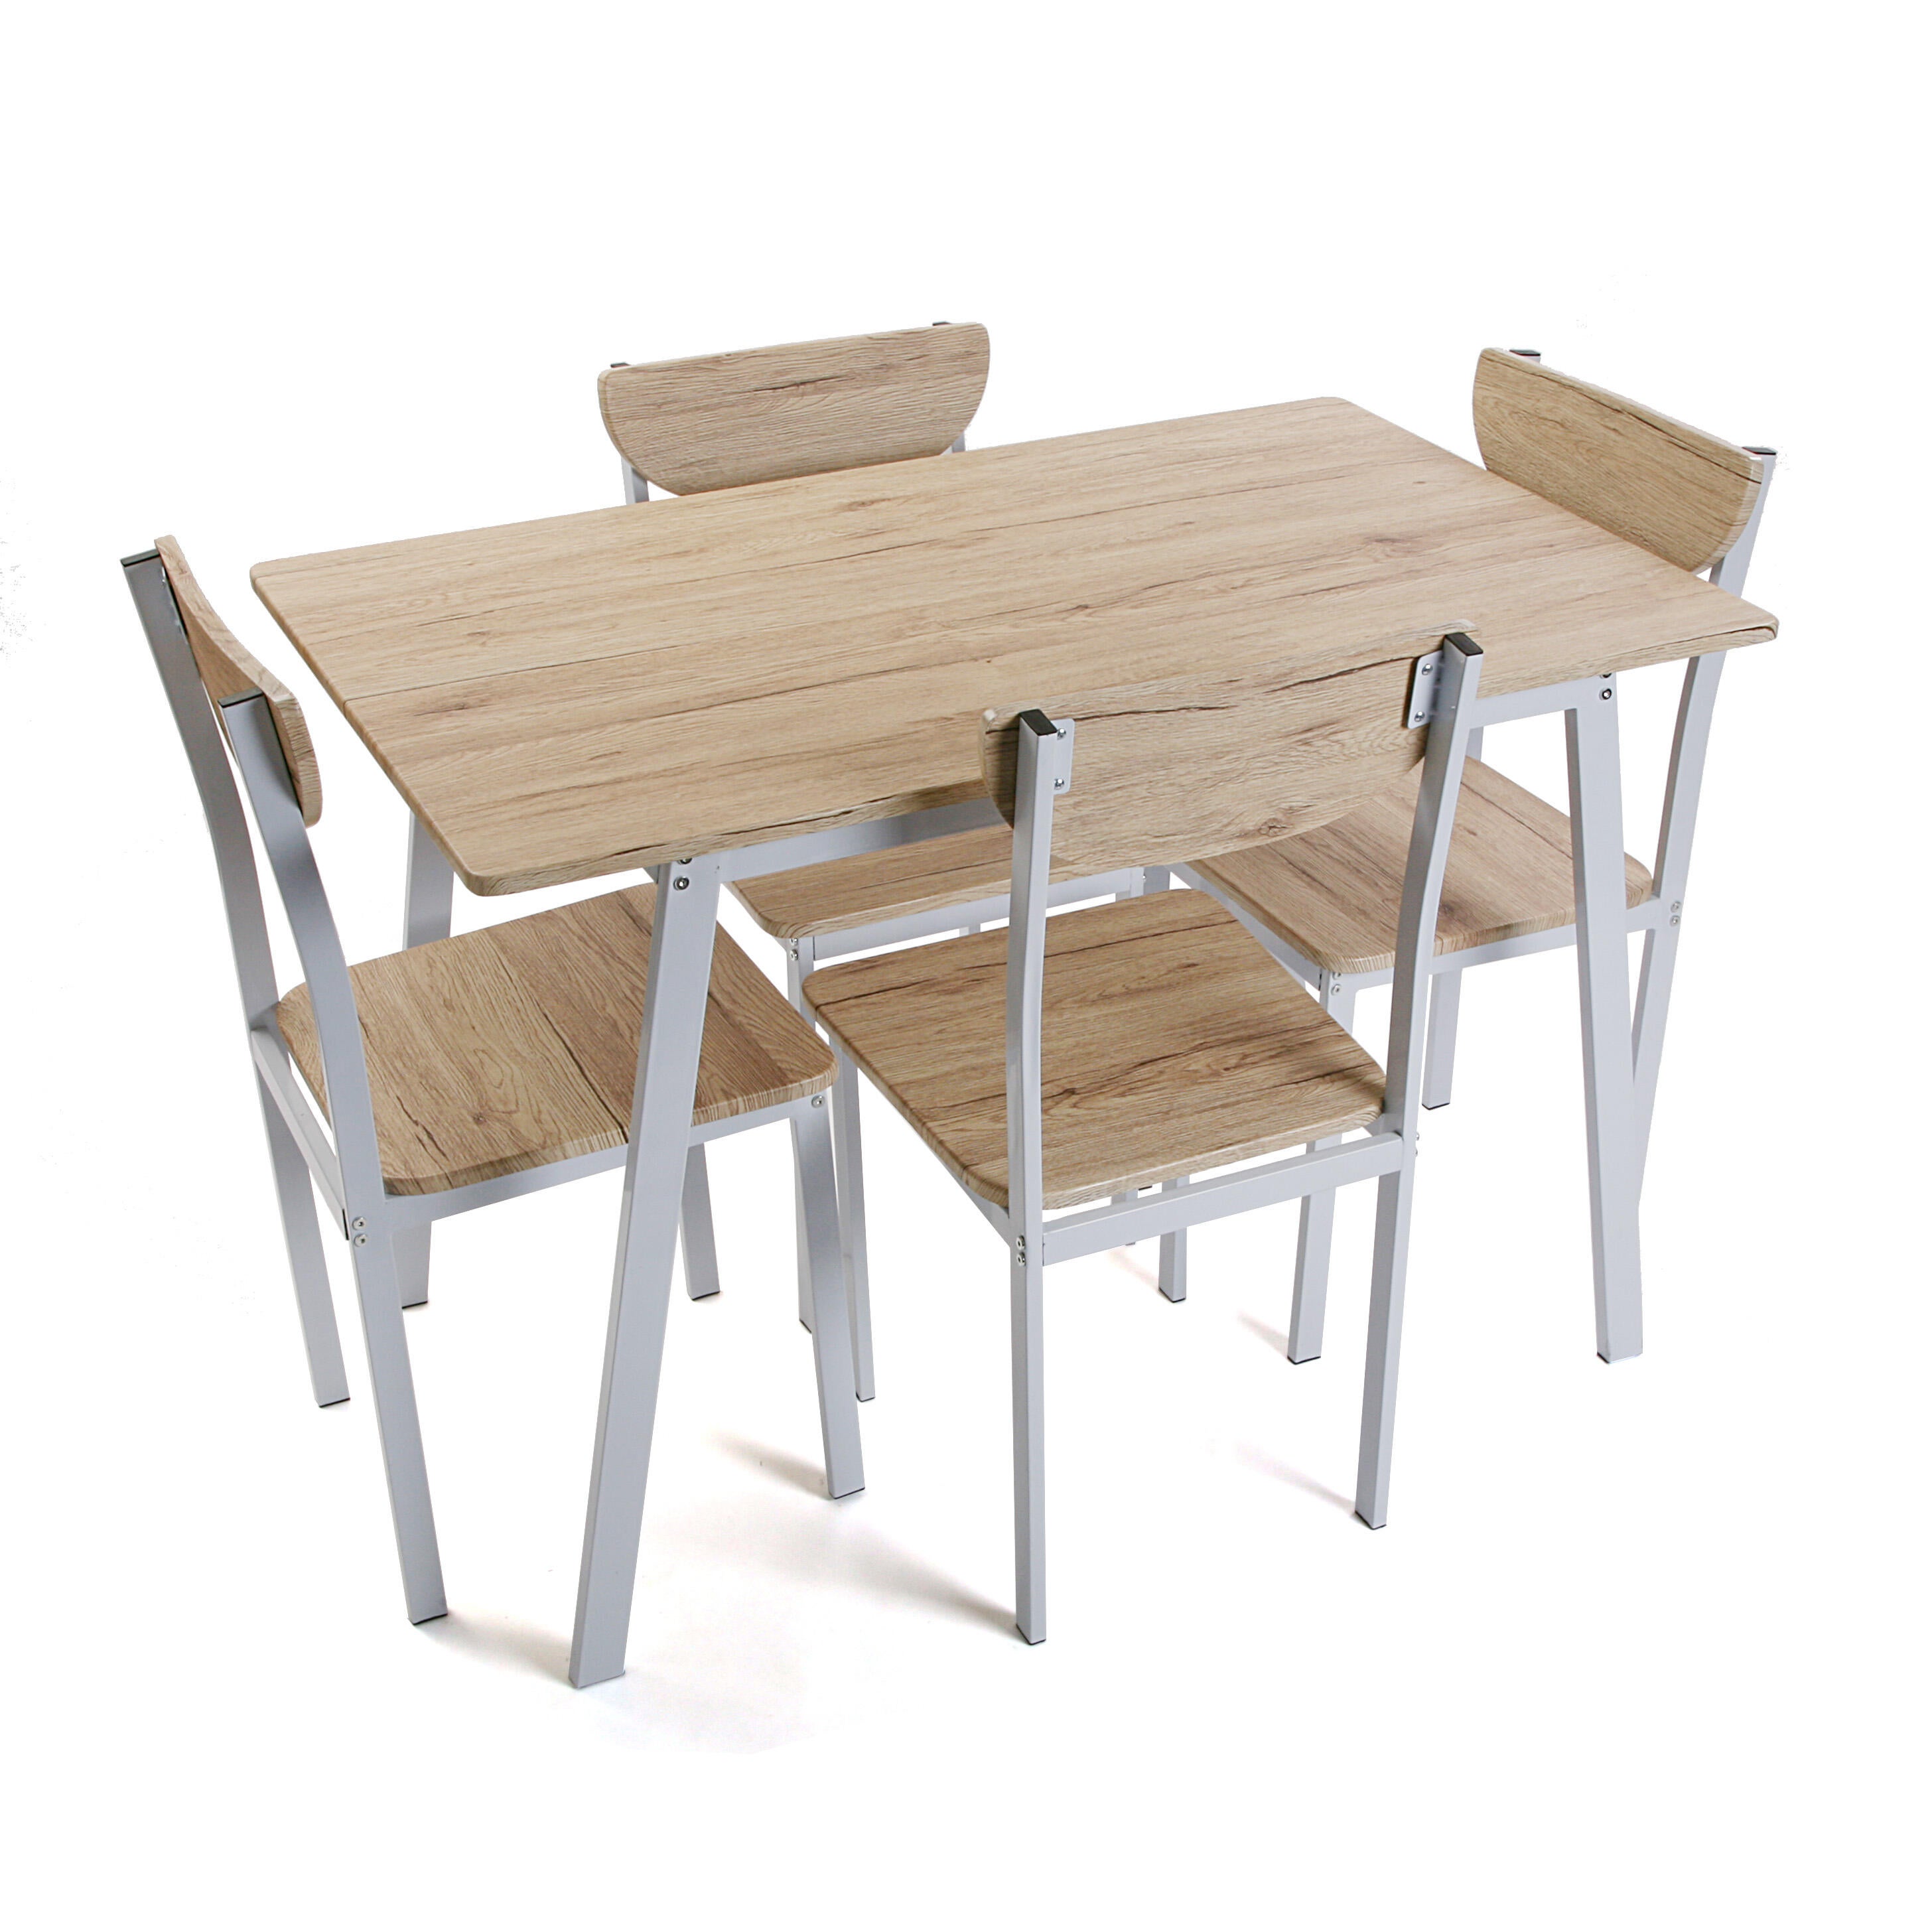 Conjunto de mesa de 75x70x110 cm y 4 sillas versa en madera mdf beige/blanco